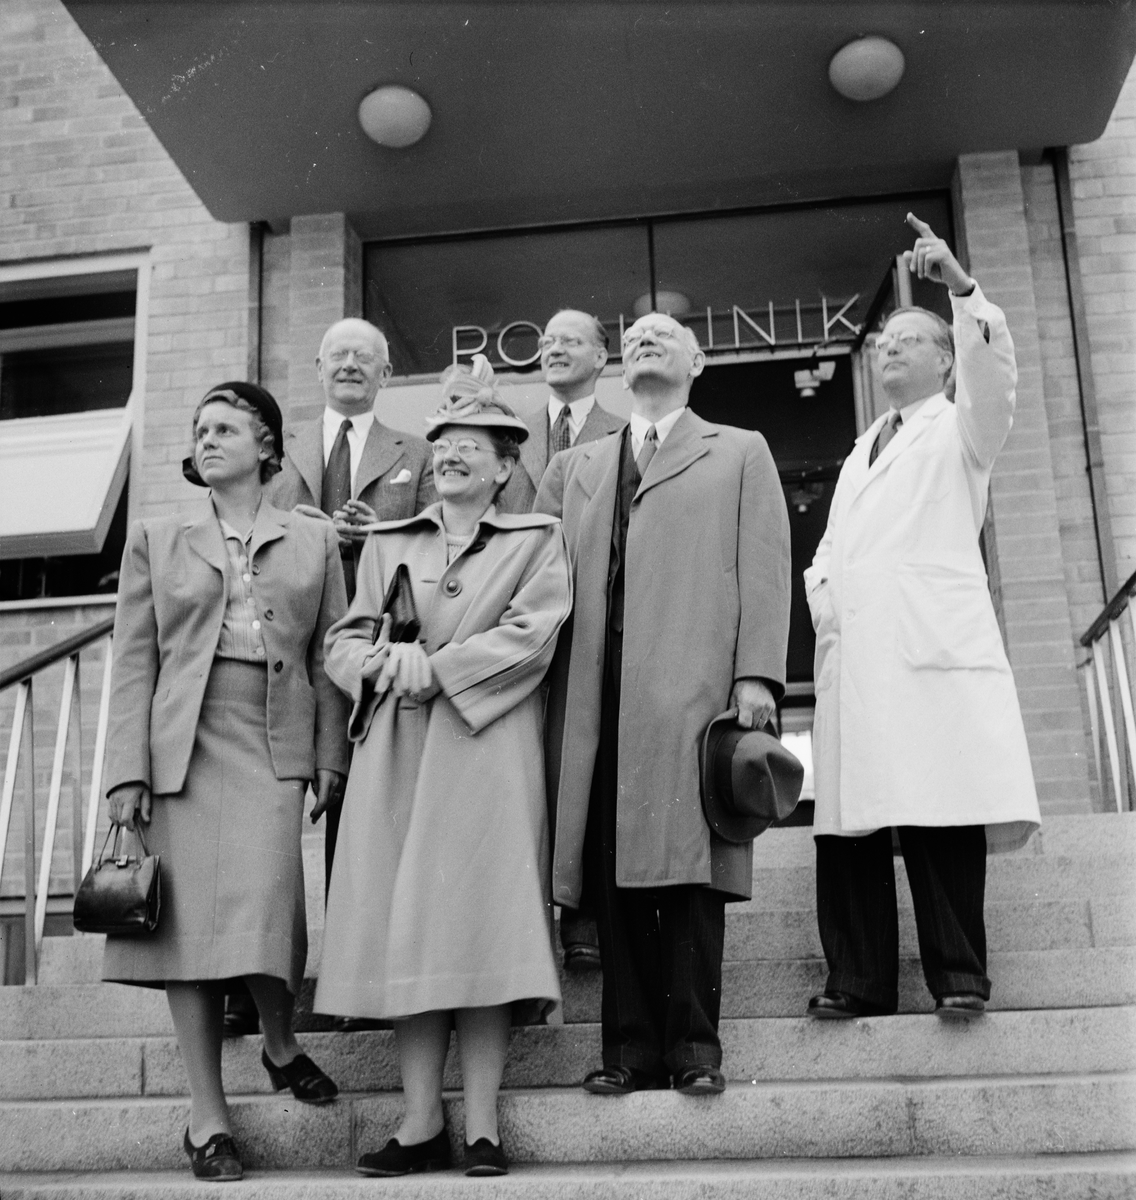 Professor Whitehorn med sällskap utanför Polikliniken, Akademiska sjukhuset, Uppsala 1947